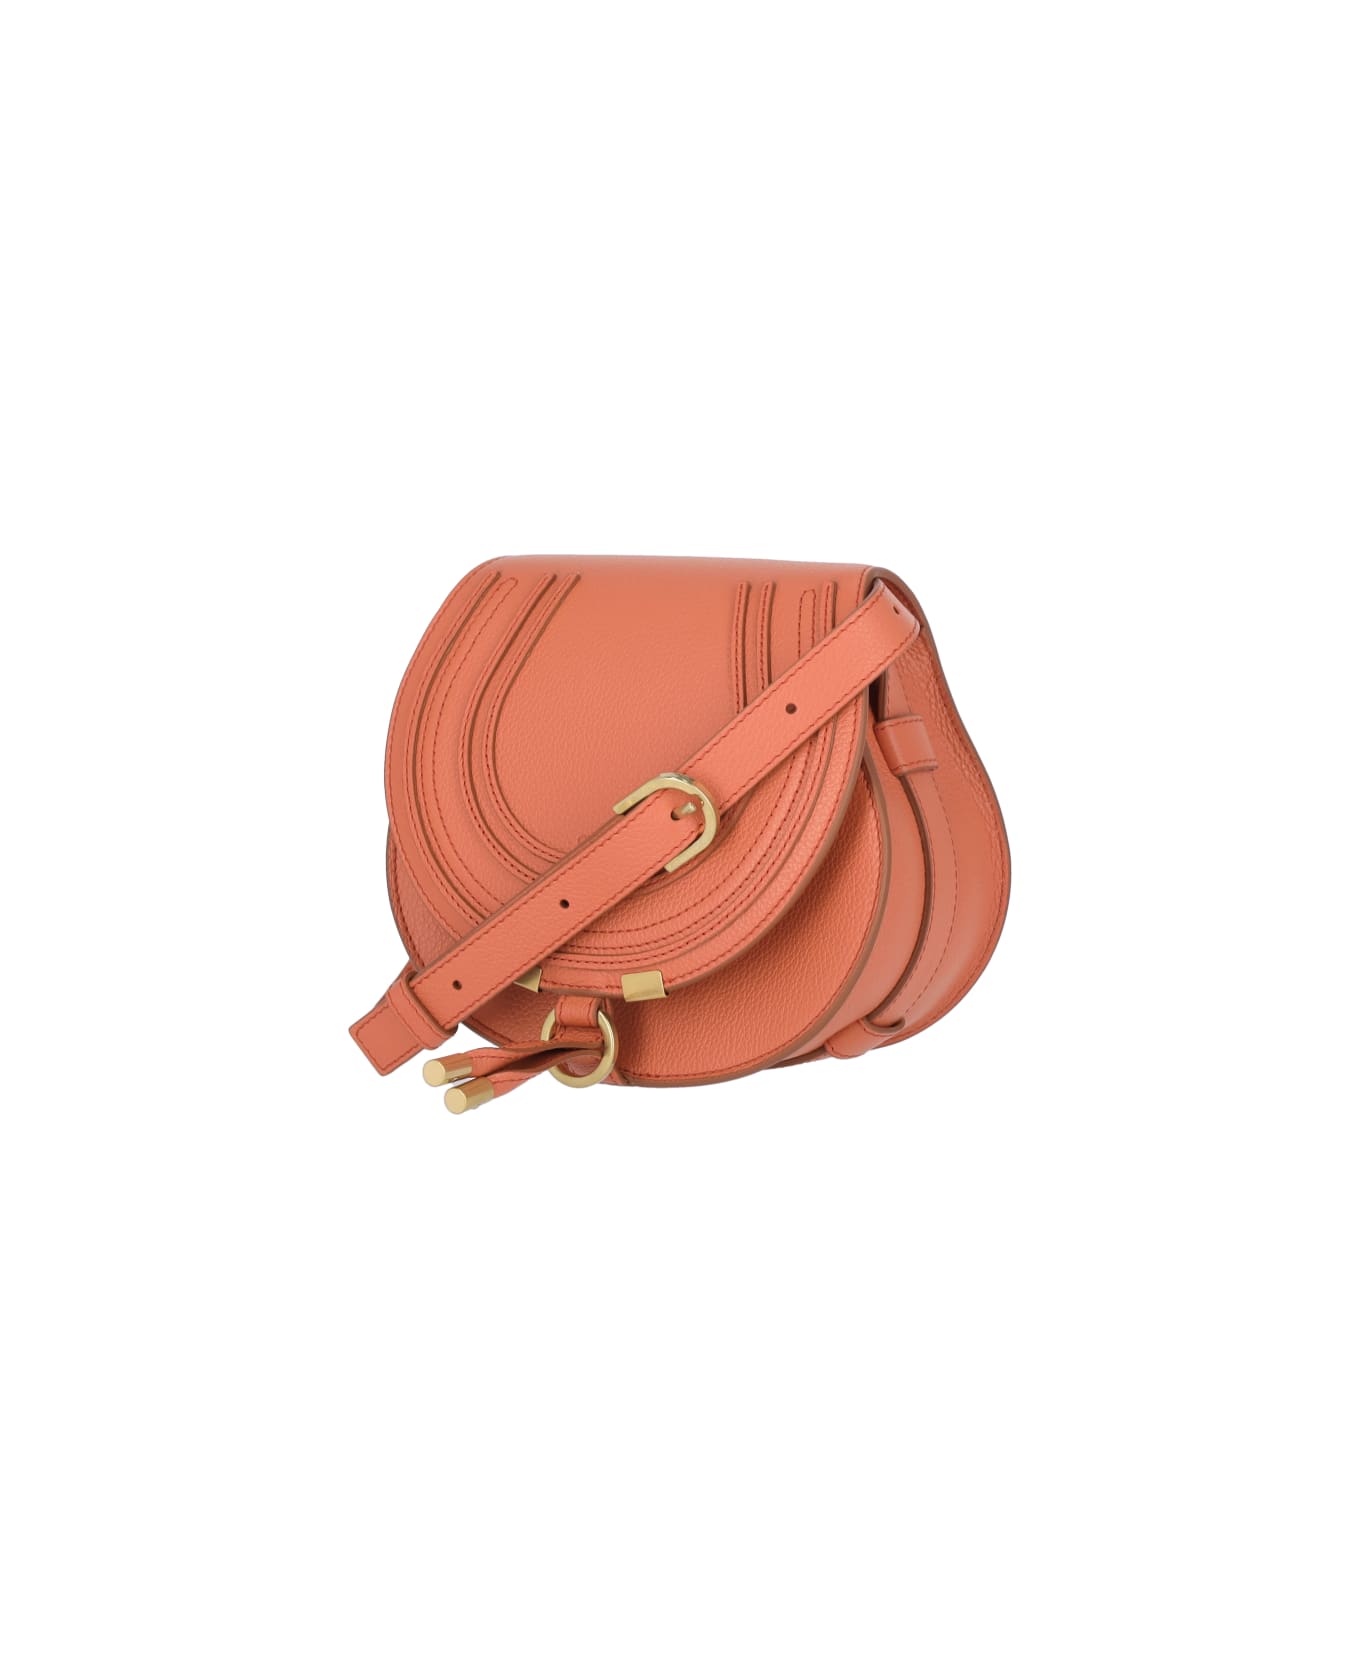 Chloé Mercie Shoulder Bag In Orange Leather - Orange トートバッグ